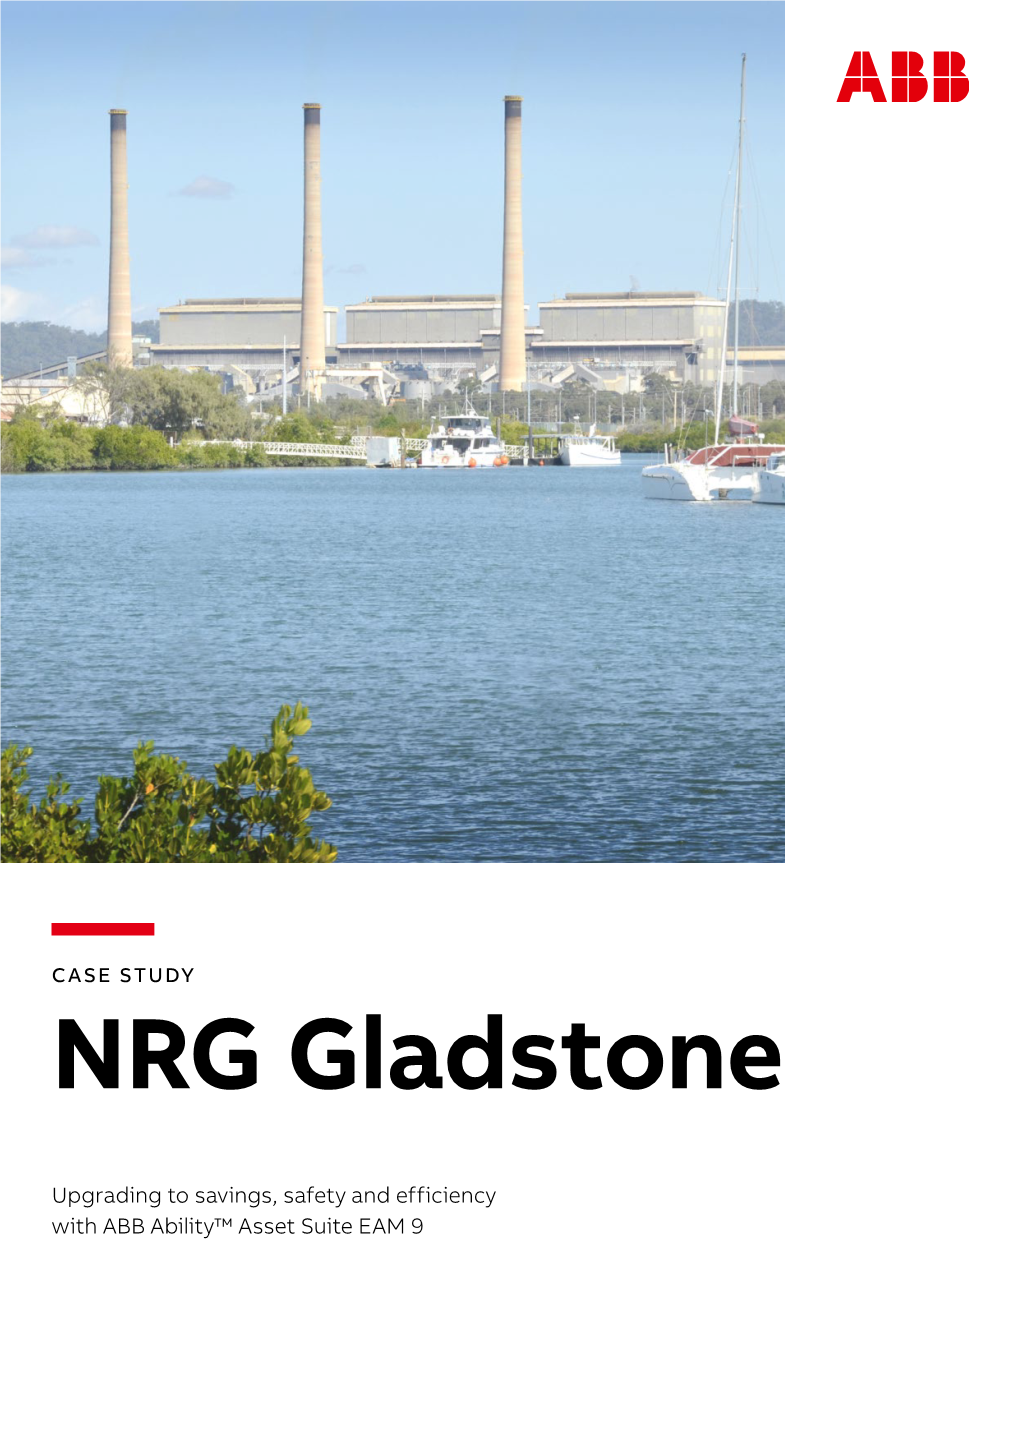 NRG Gladstone Case Study